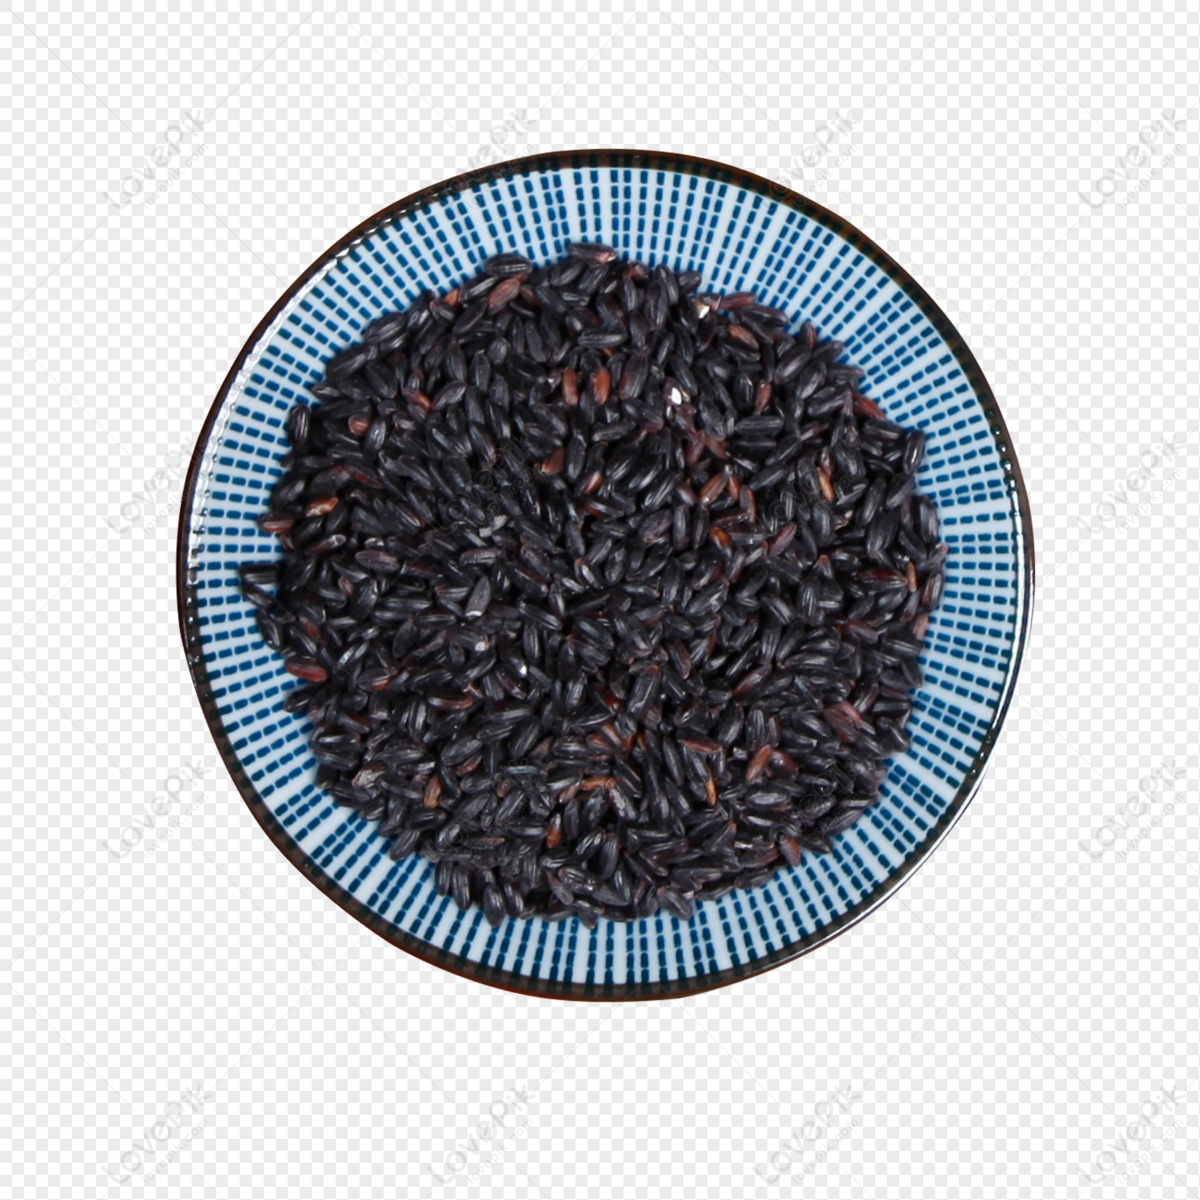 Black rice cover. Черный рис PNG. Black Rice PNG.